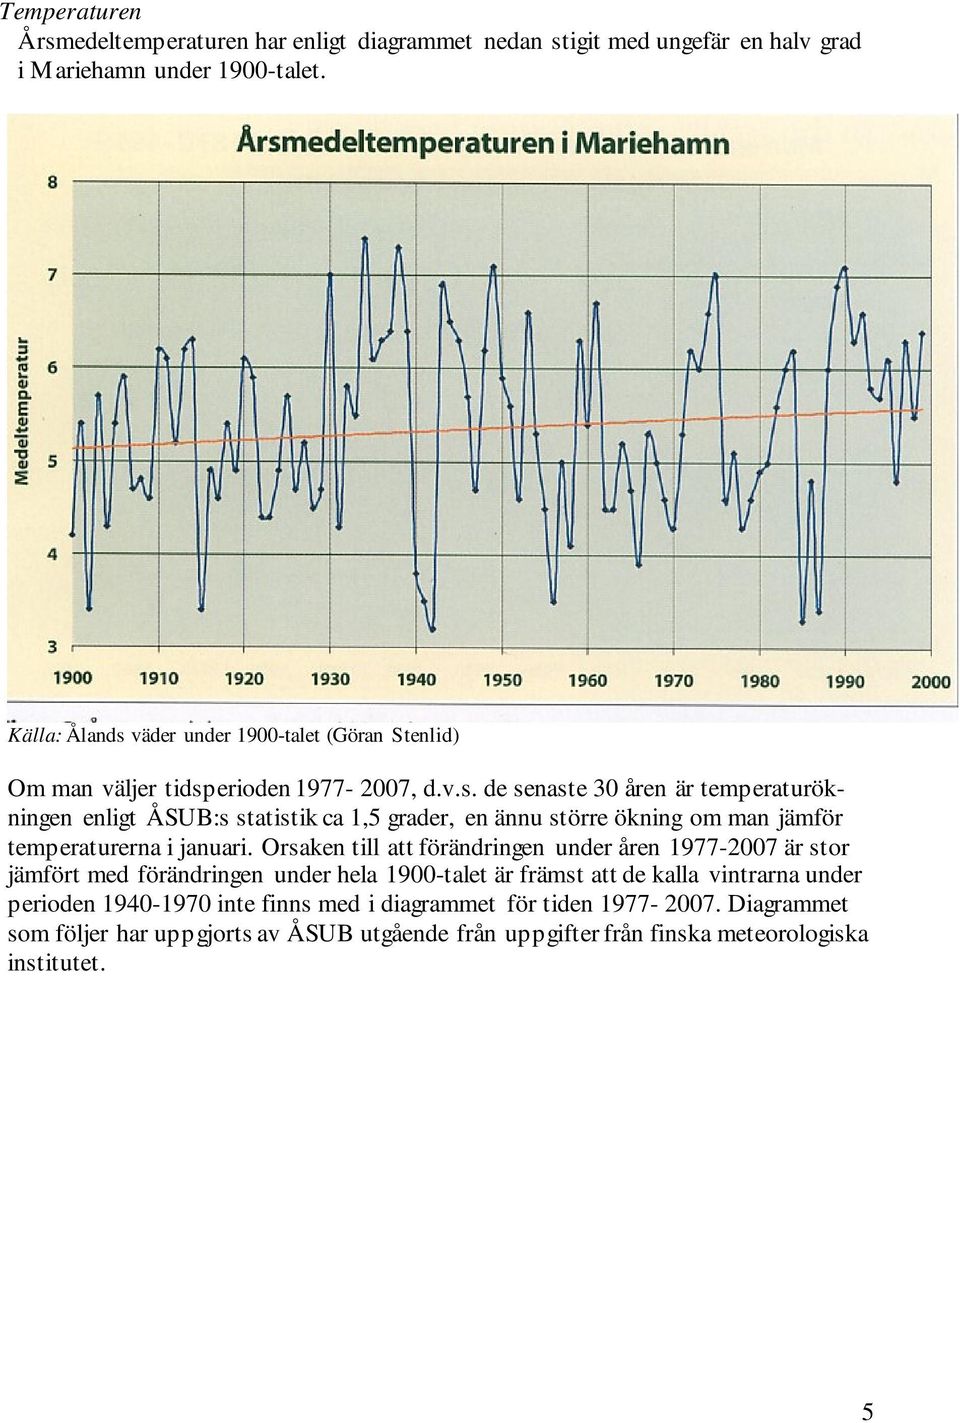 Orsaken till att förändringen under åren 1977-2007 är stor jämfört med förändringen under hela 1900-talet är främst att de kalla vintrarna under perioden 1940-1970 inte